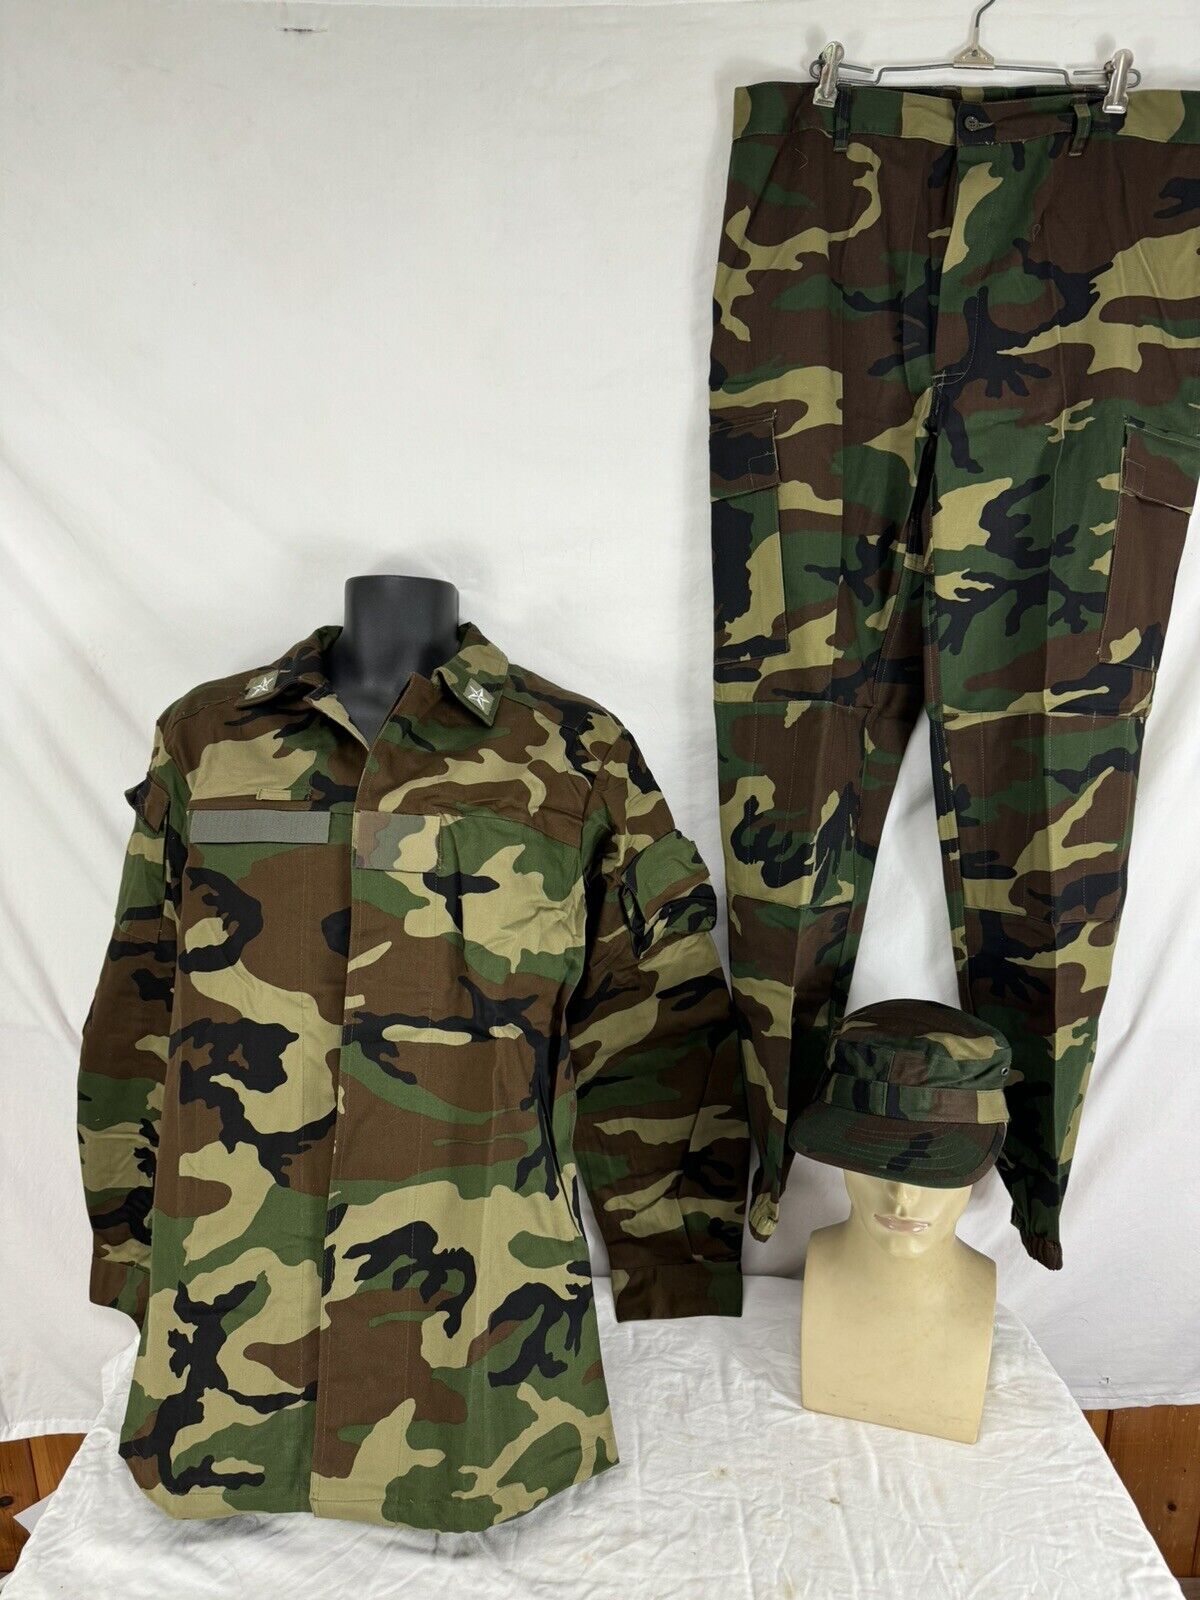 Vintage Italian Army Camouflage Uniform 1990s Era  Size Large